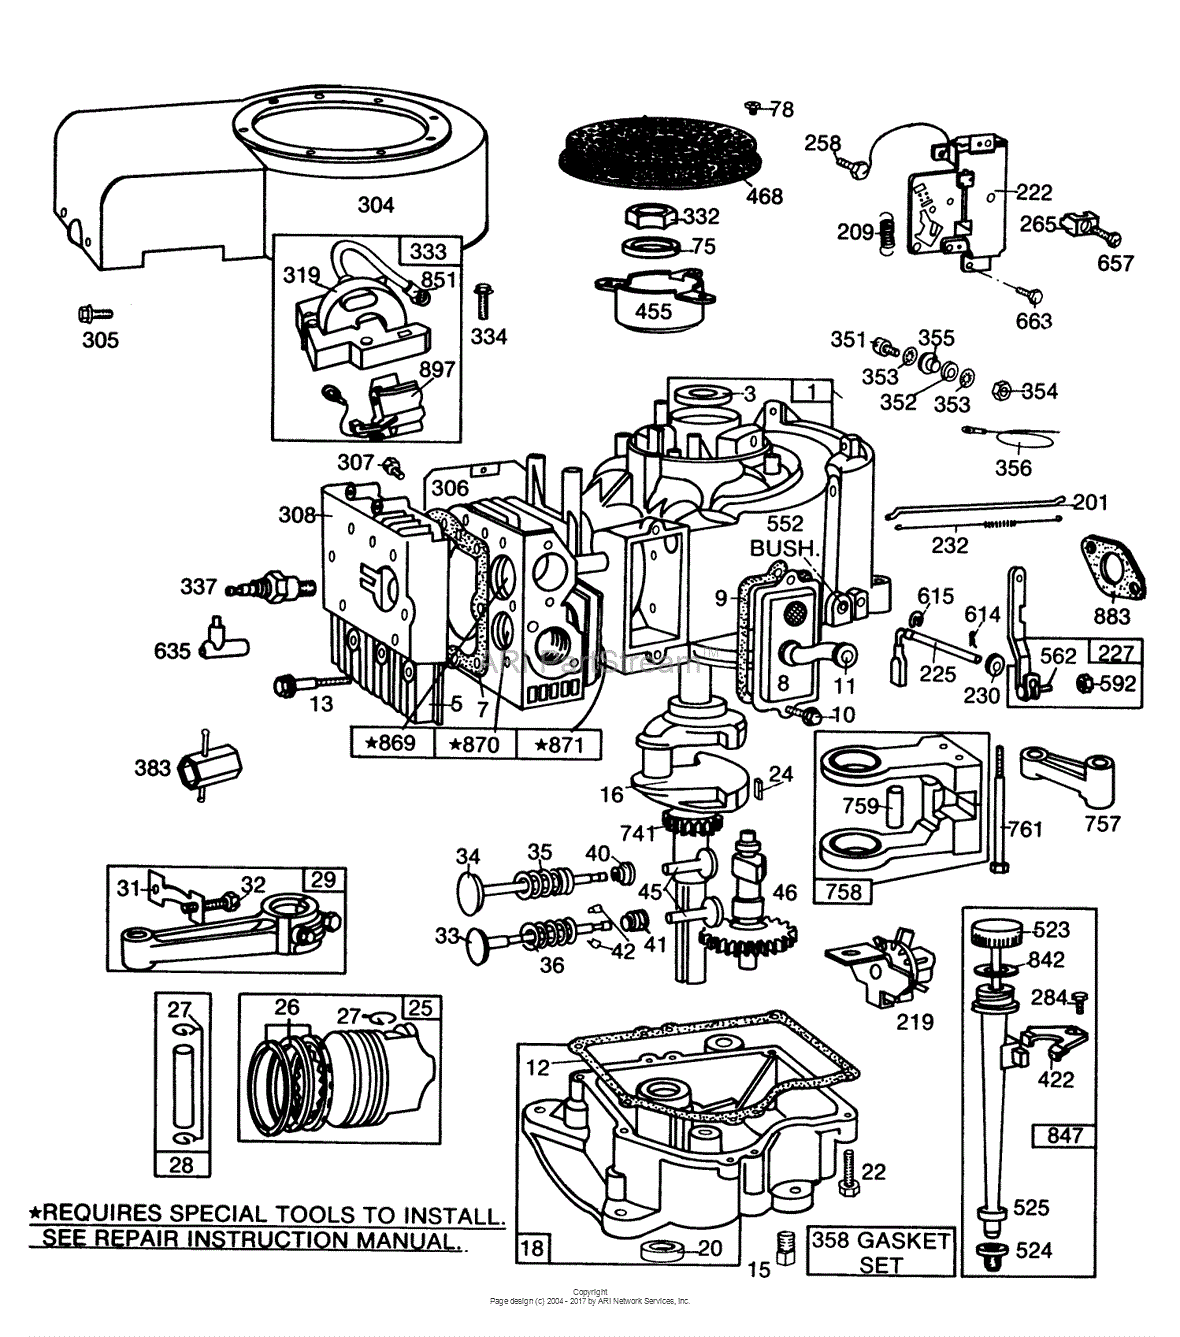 Toro 57360, 11-32 Lawn Tractor, 1984 (SN 4000001-4999999) Parts Diagram ...